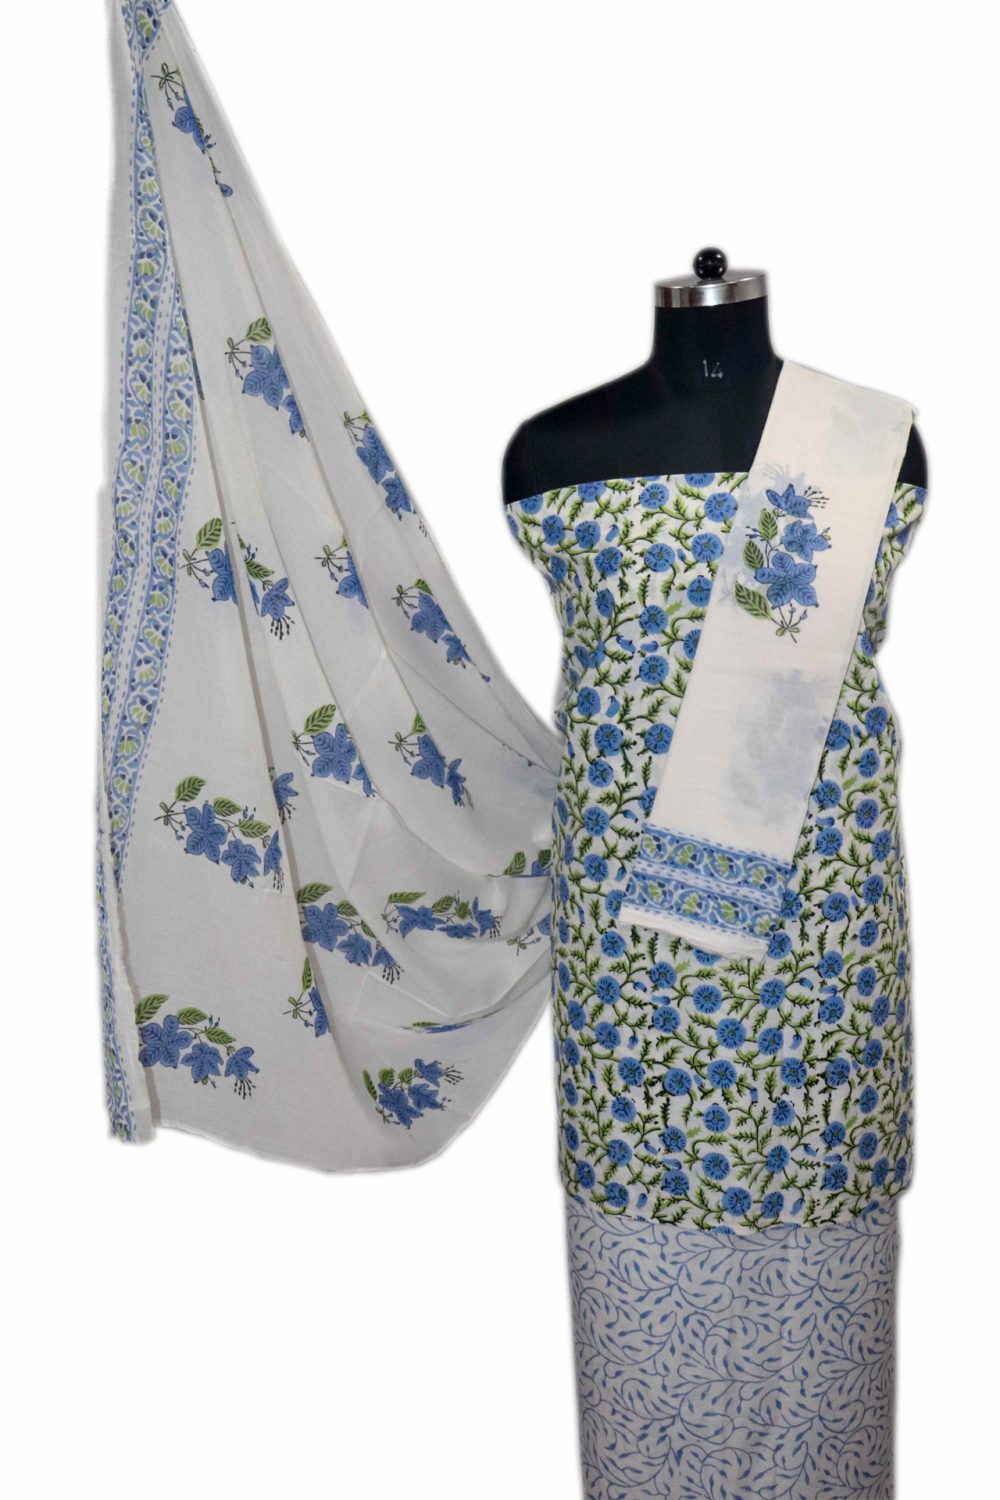 Floral Block Print Salwar suits with Mulmul Dupatta - JB317